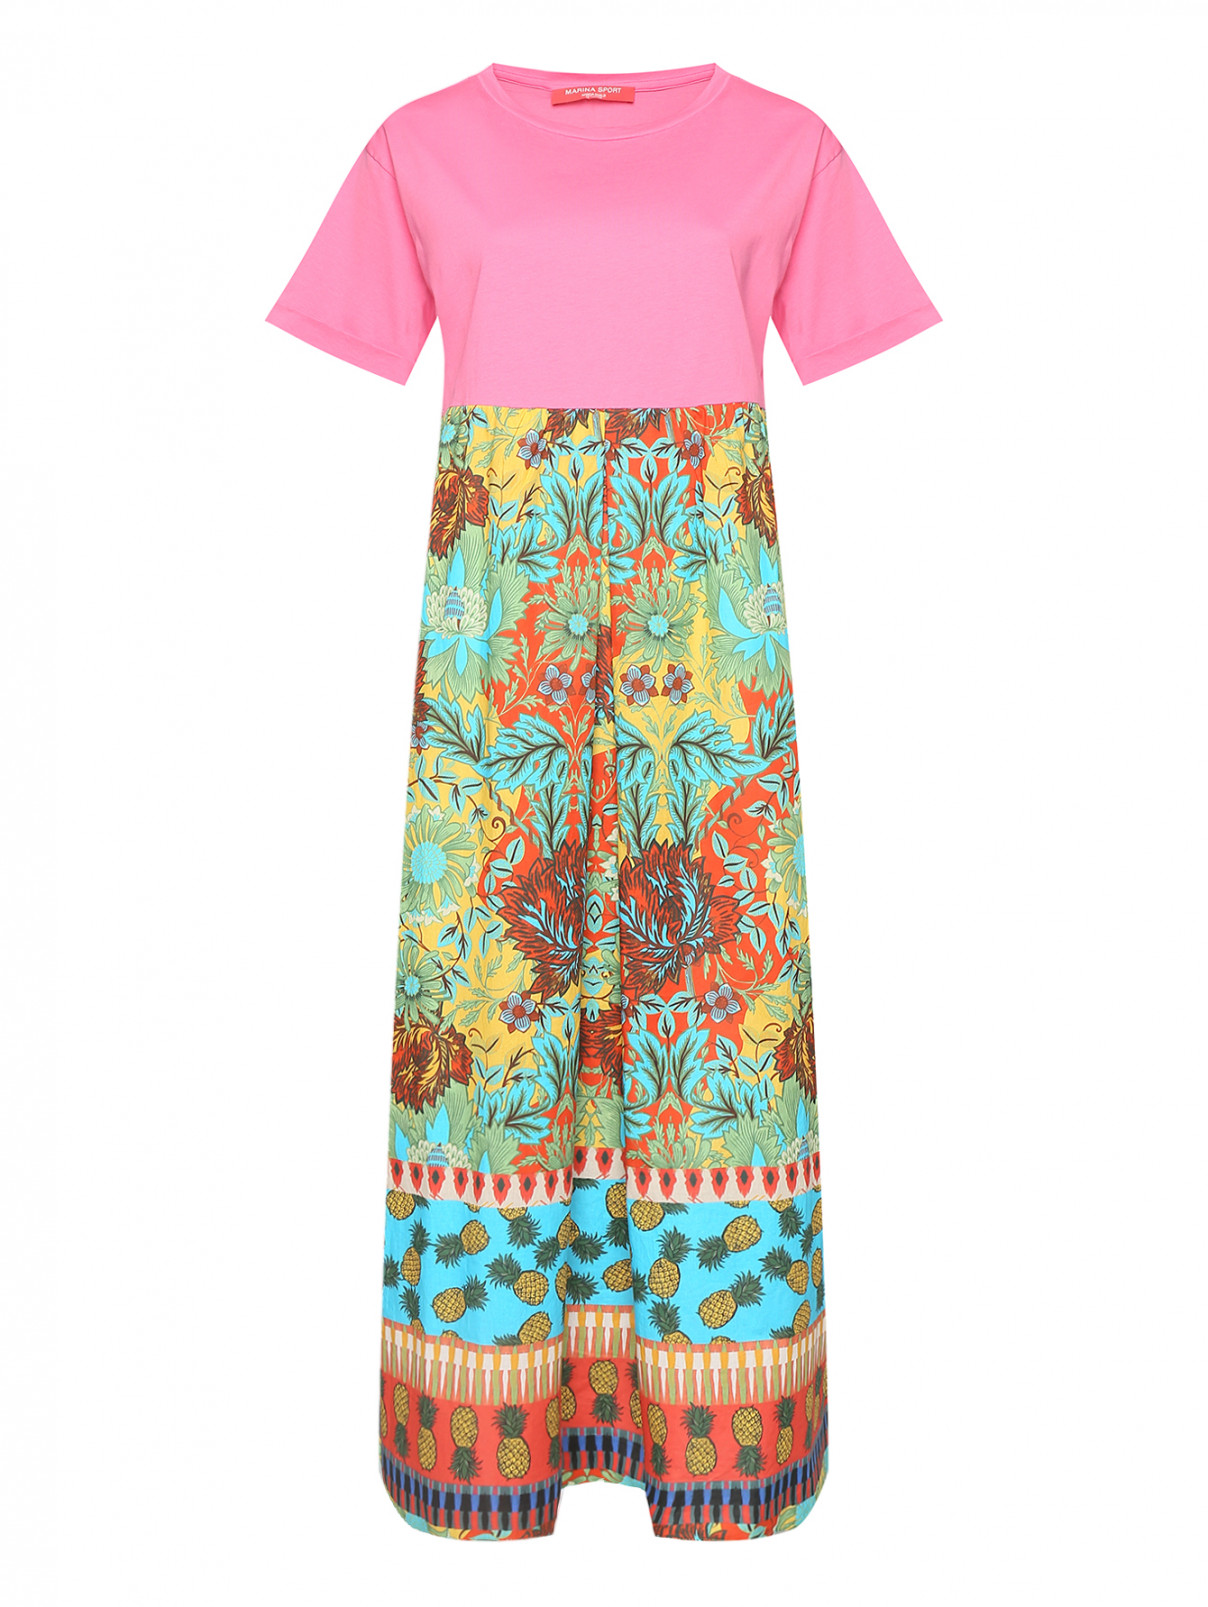 Комбинированное платье из хлопка с узором Marina Rinaldi  –  Общий вид  – Цвет:  Мультиколор